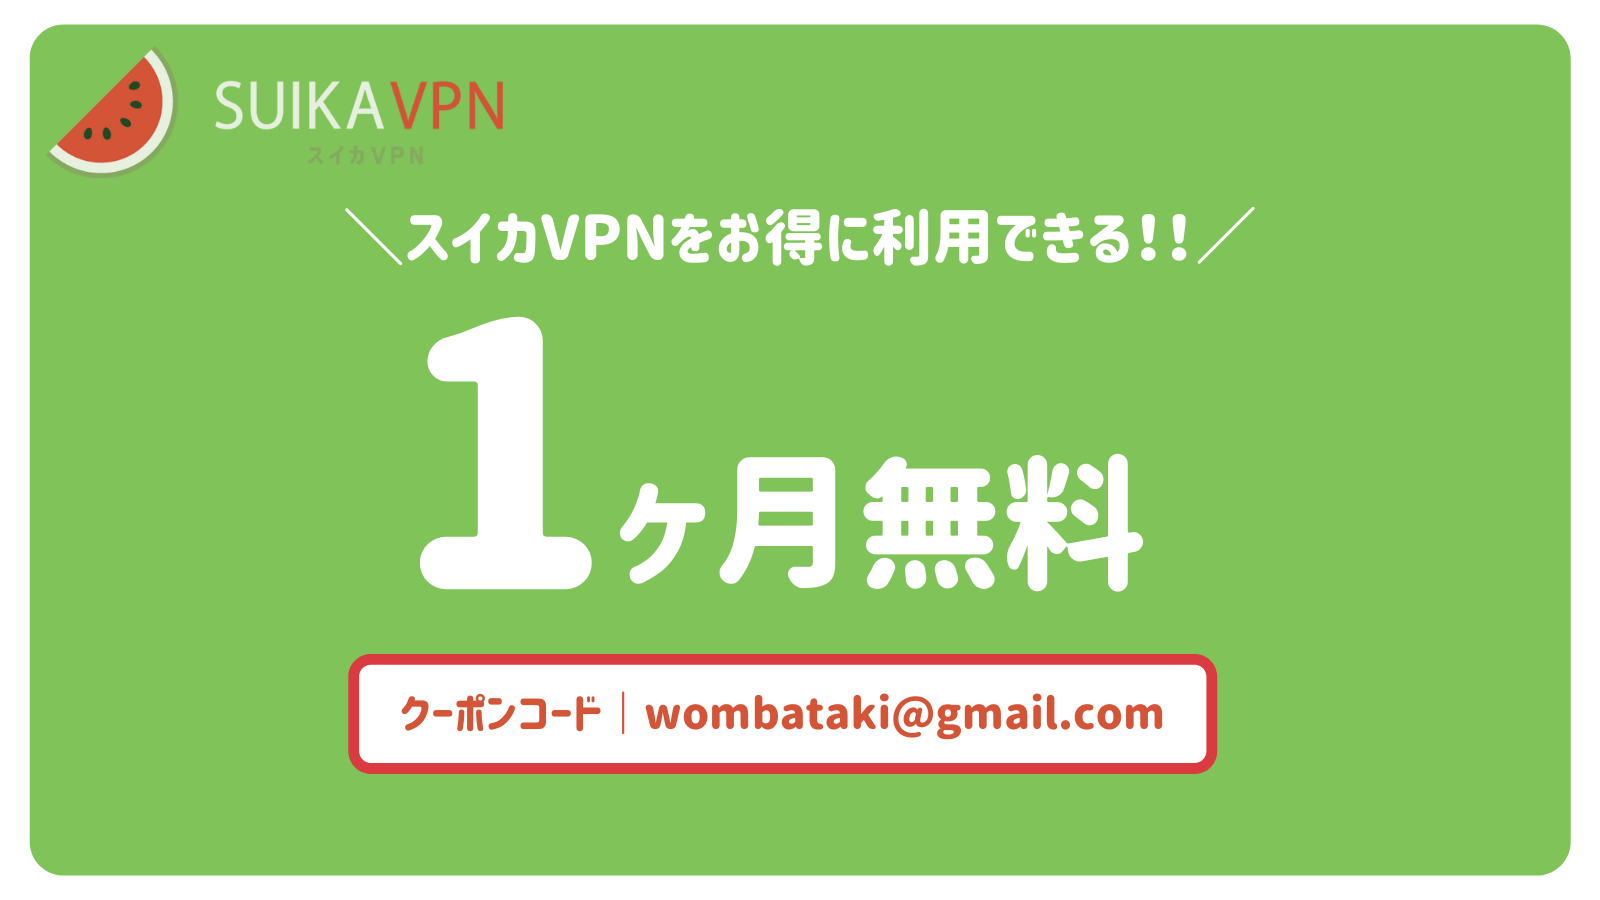 【1ヶ月無料】スイカVPNのクーポンコードを紹介